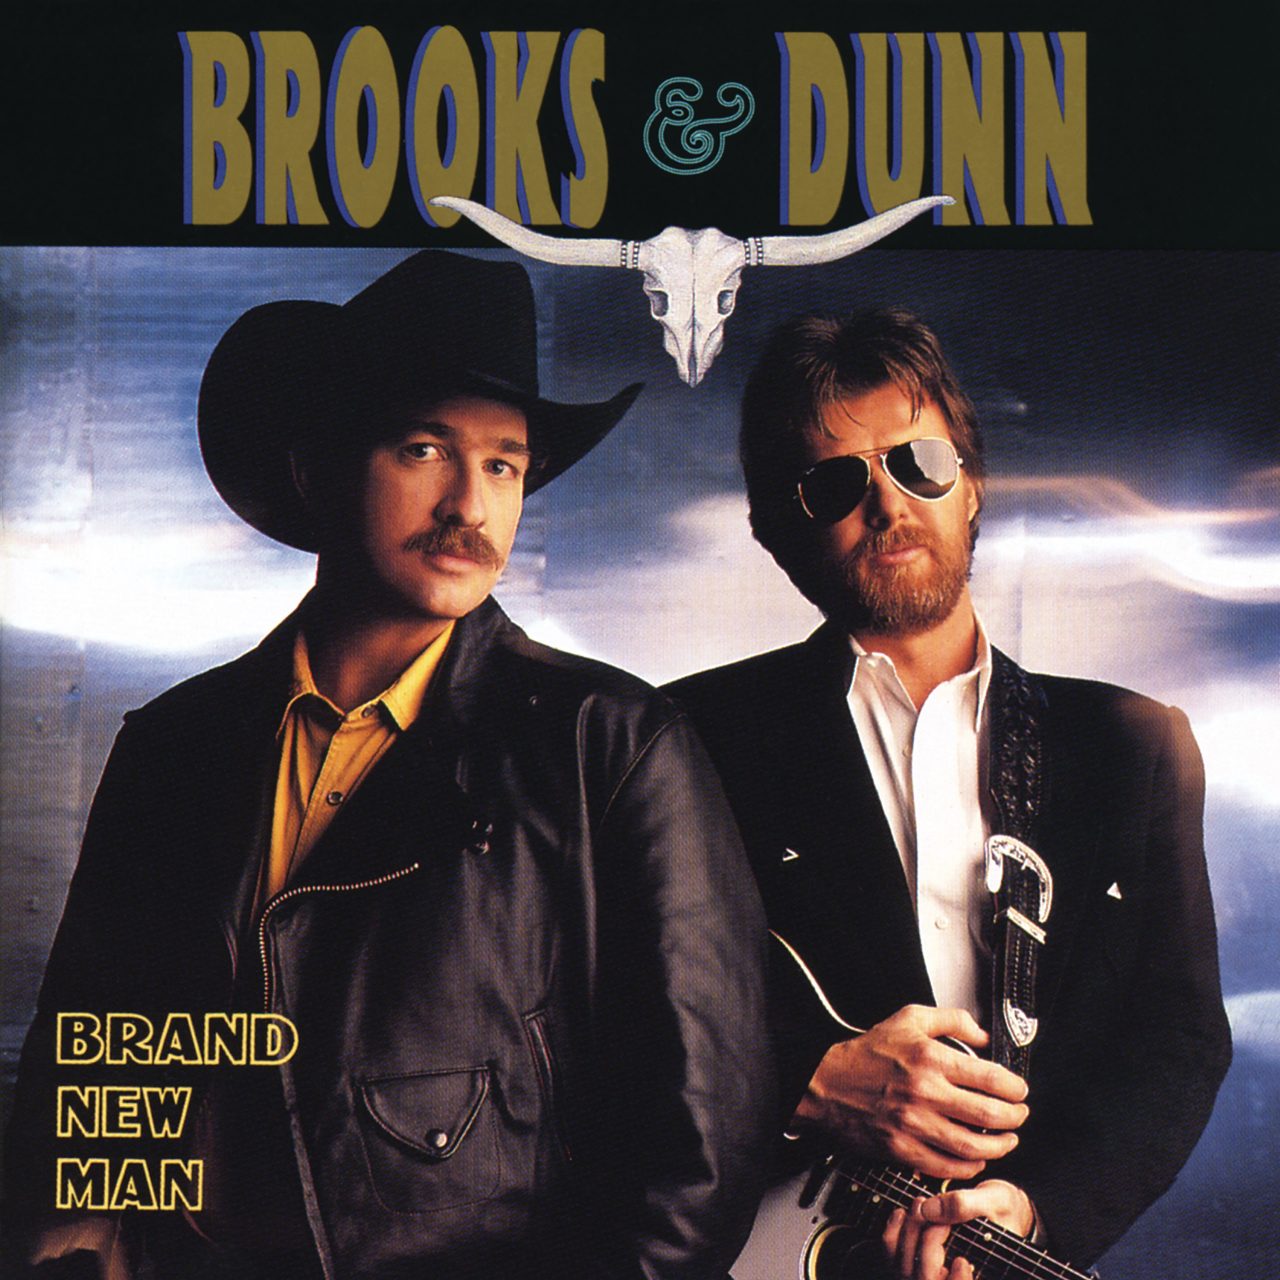 Brooks & Dunn – Brand New Man cover album